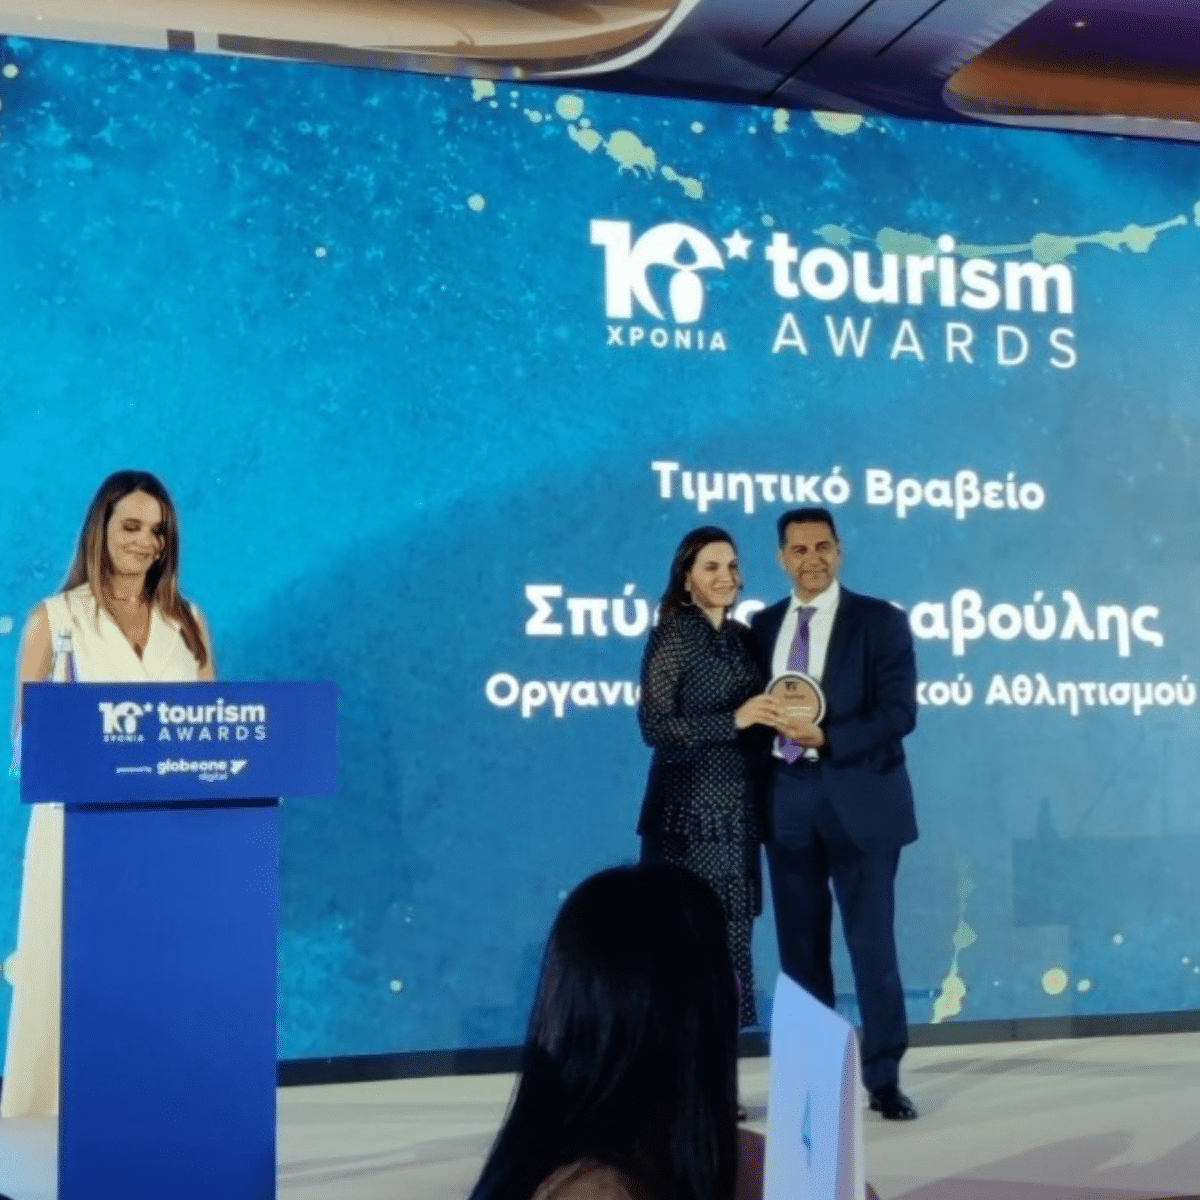 aponomi-timitikou-vraveiou-tourism-awards